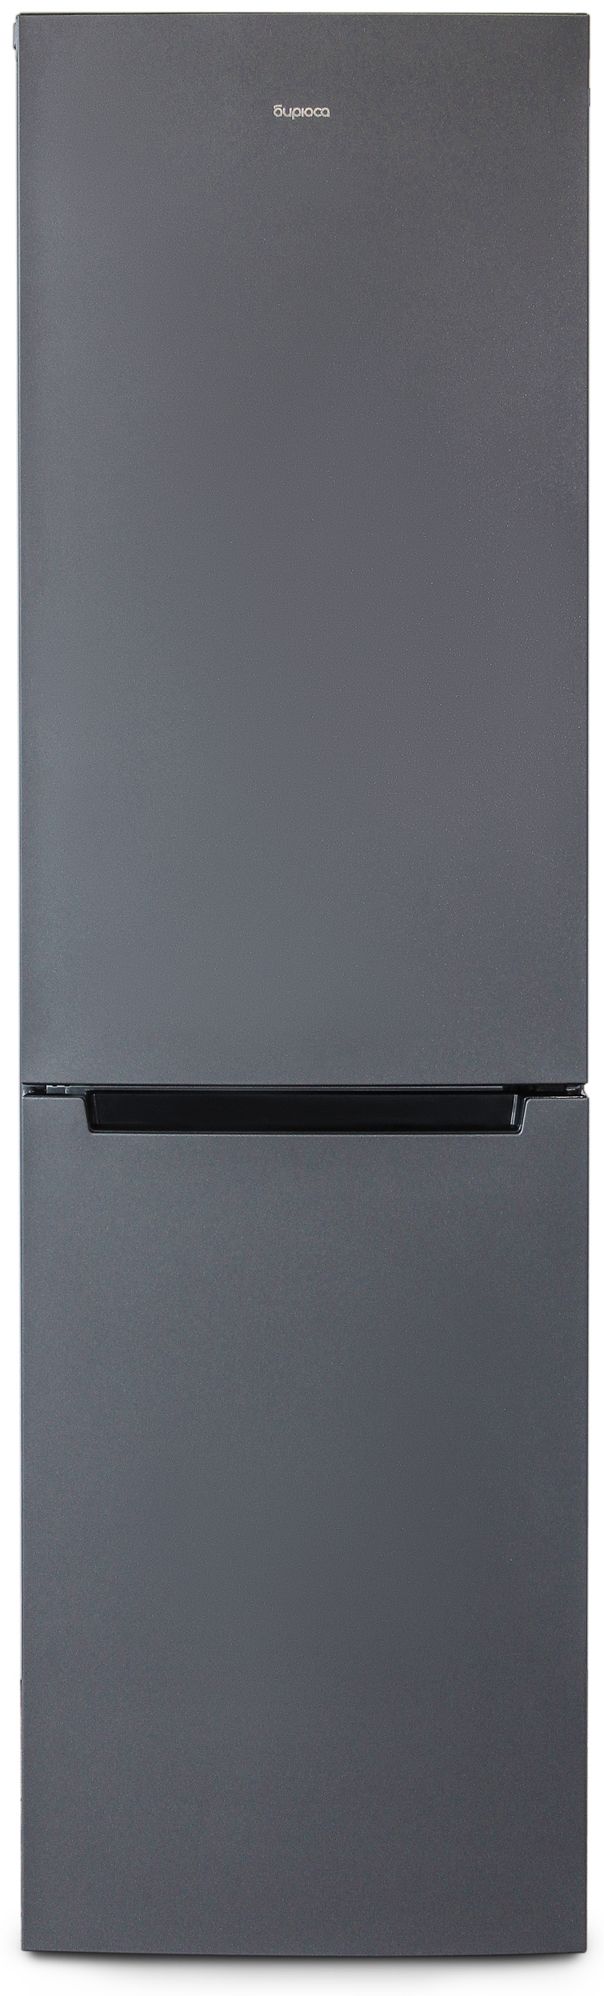 холодильник бирюса 880nf, купить в Красноярске холодильник бирюса 880nf,  купить в Красноярске дешево холодильник бирюса 880nf, купить в Красноярске минимальной цене холодильник бирюса 880nf